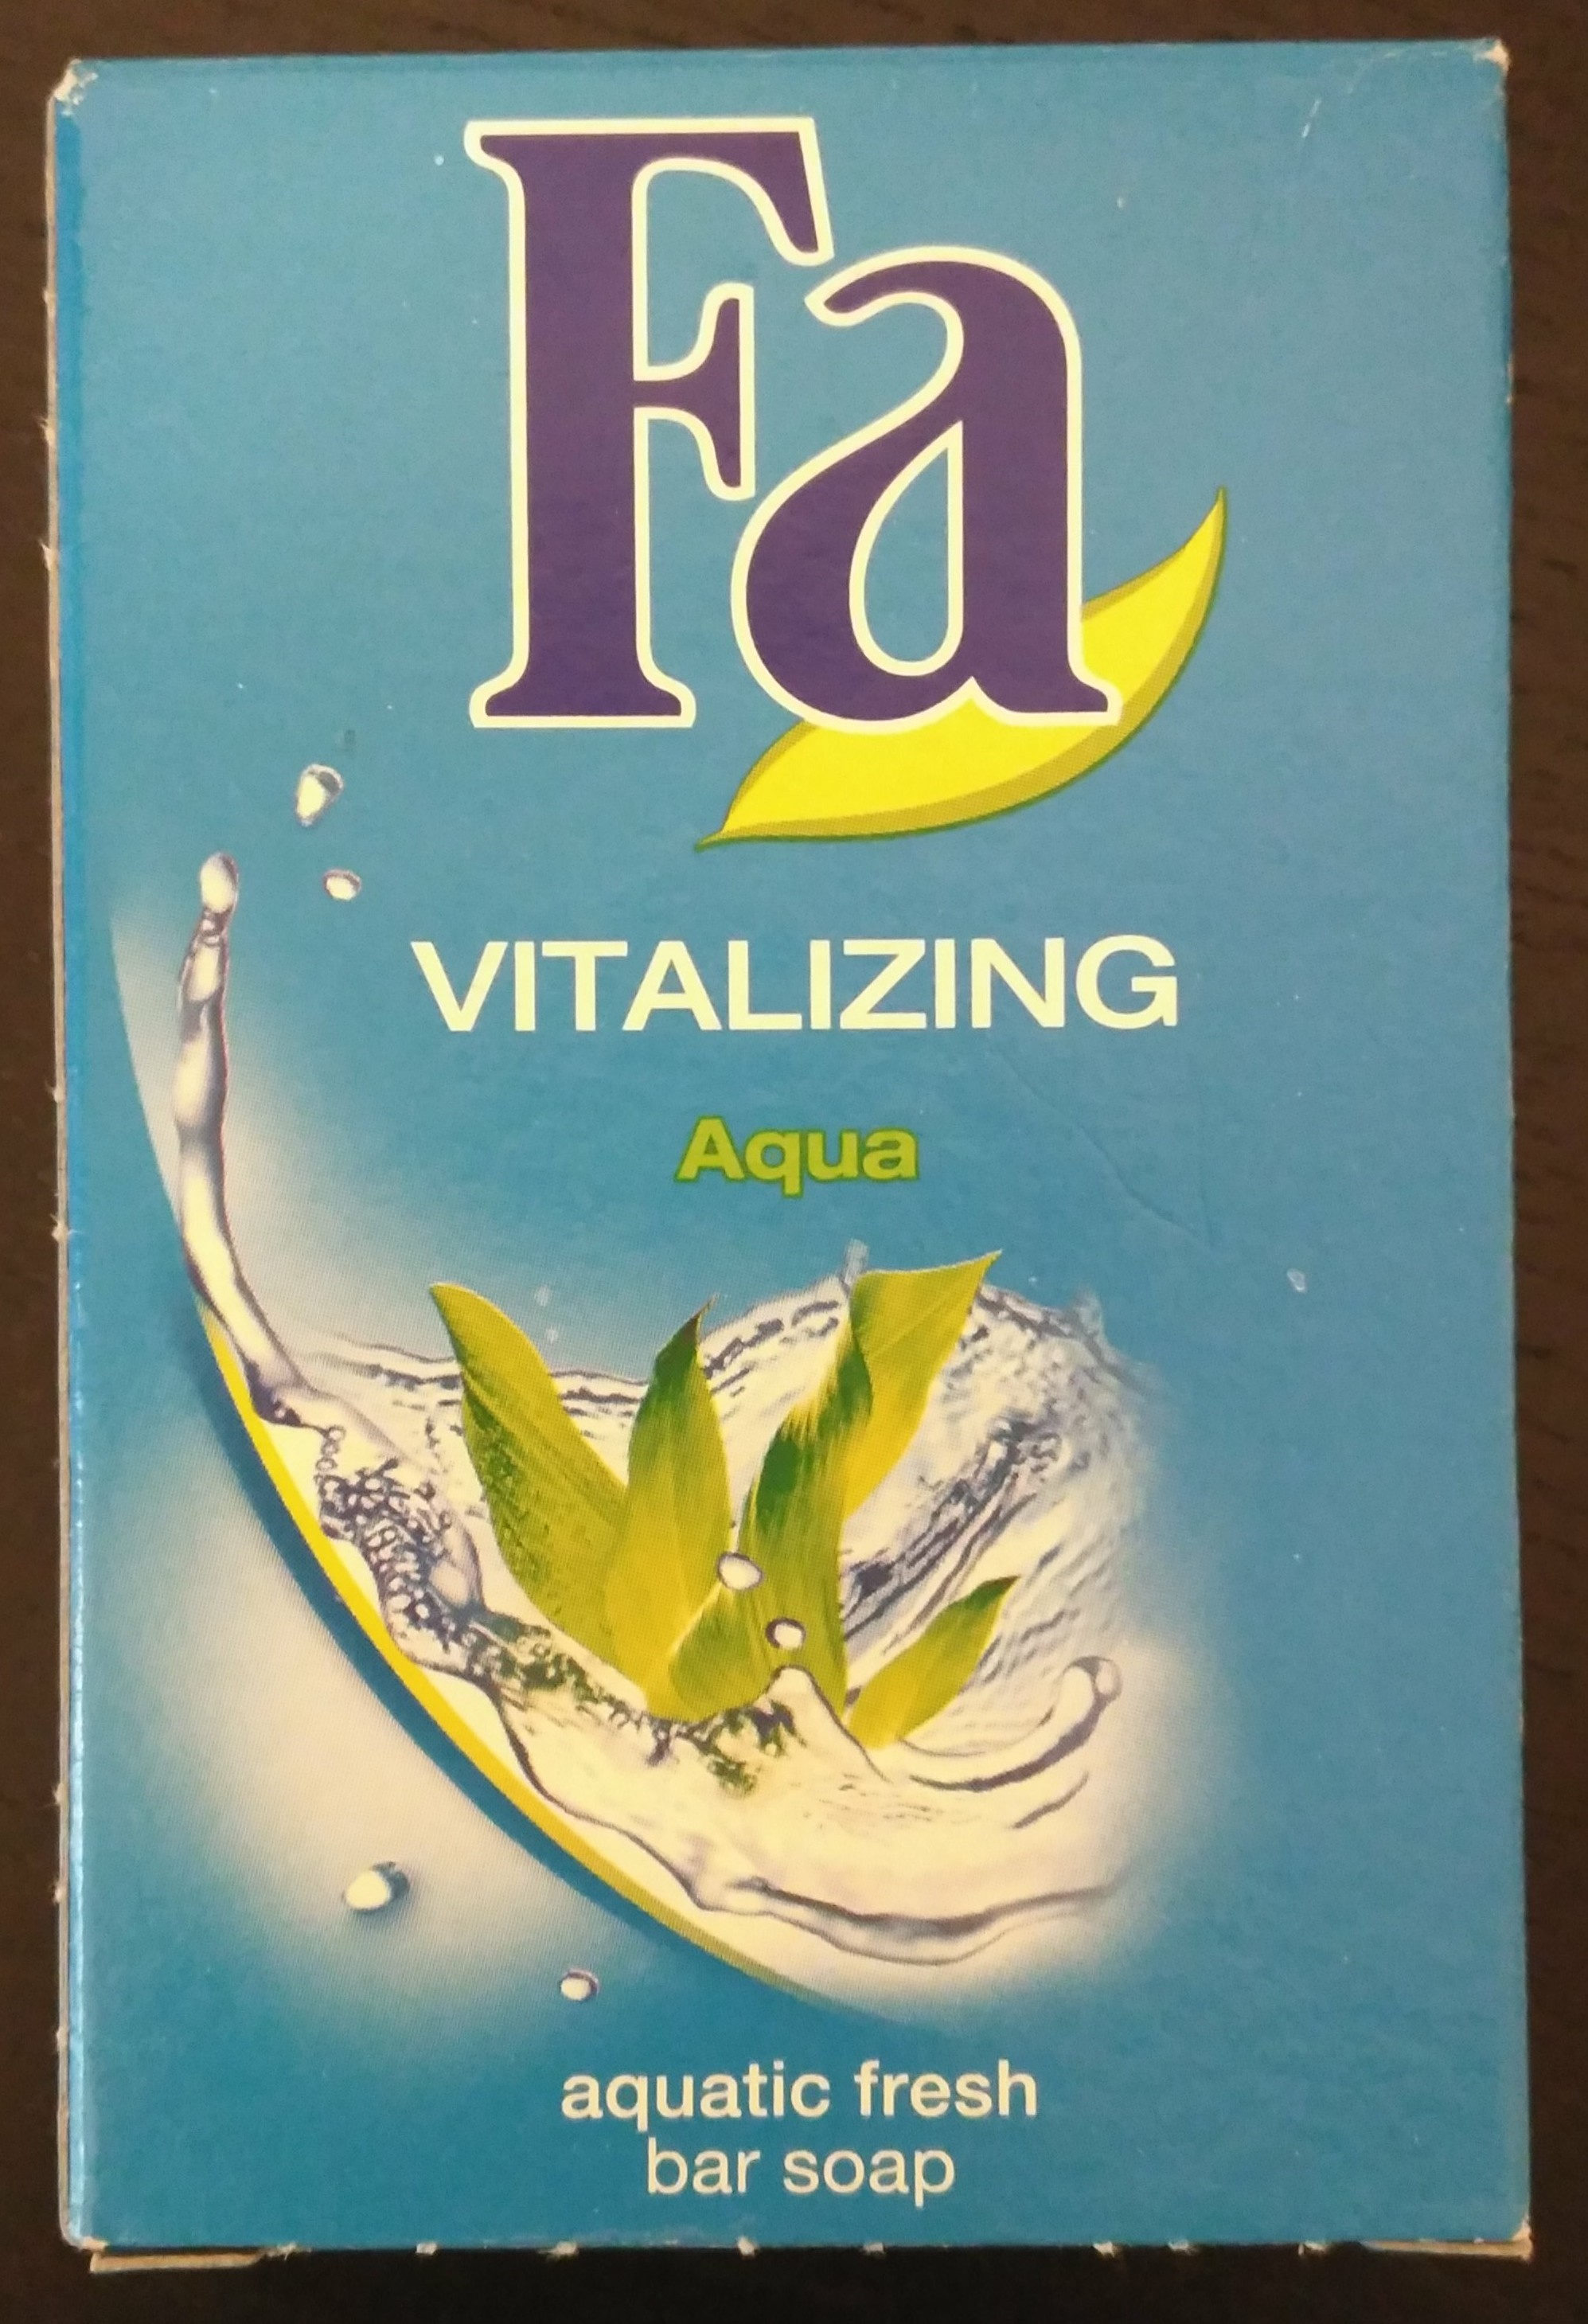 Vitalizing Aqua Festseife mit aquatisch-frischem Duft - Produkt - de